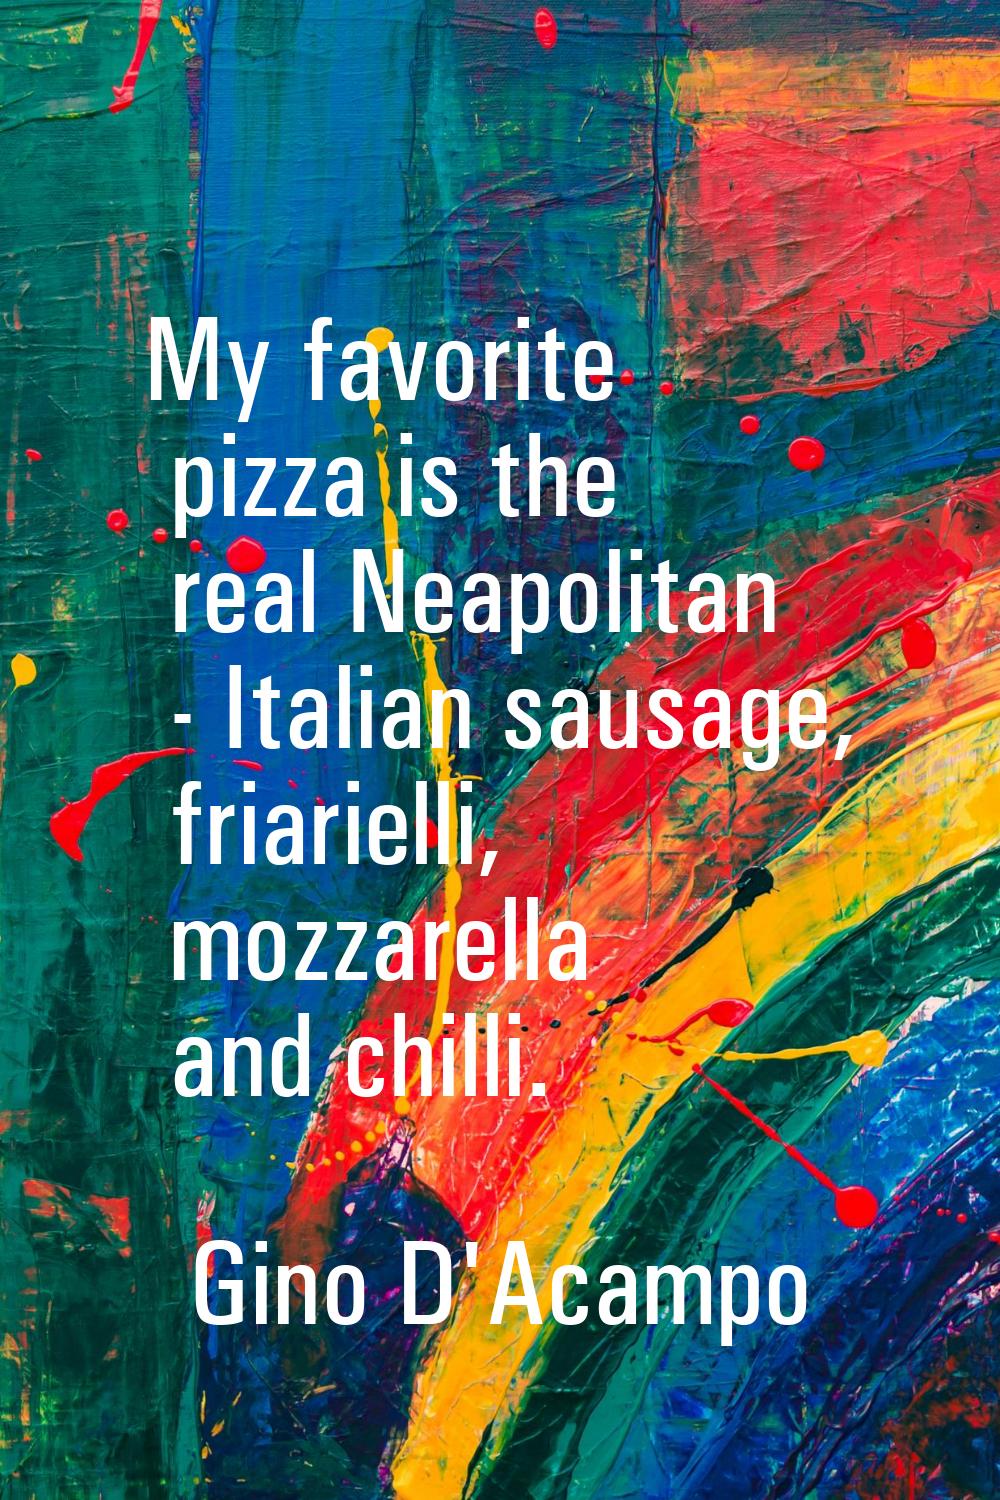 My favorite pizza is the real Neapolitan - Italian sausage, friarielli, mozzarella and chilli.